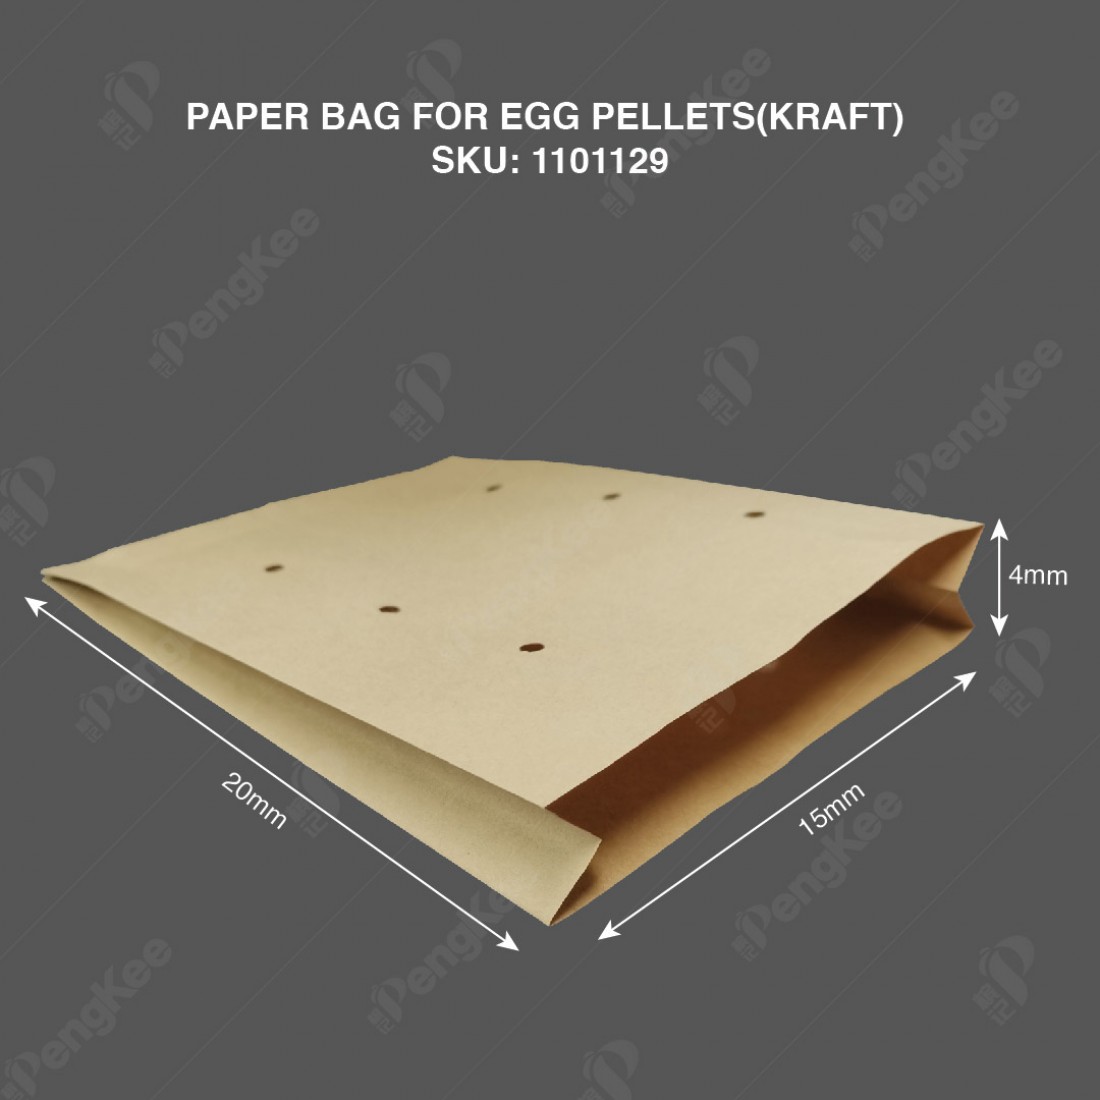 PAPER BAG FOR EGG PELLETS (KRAFT)